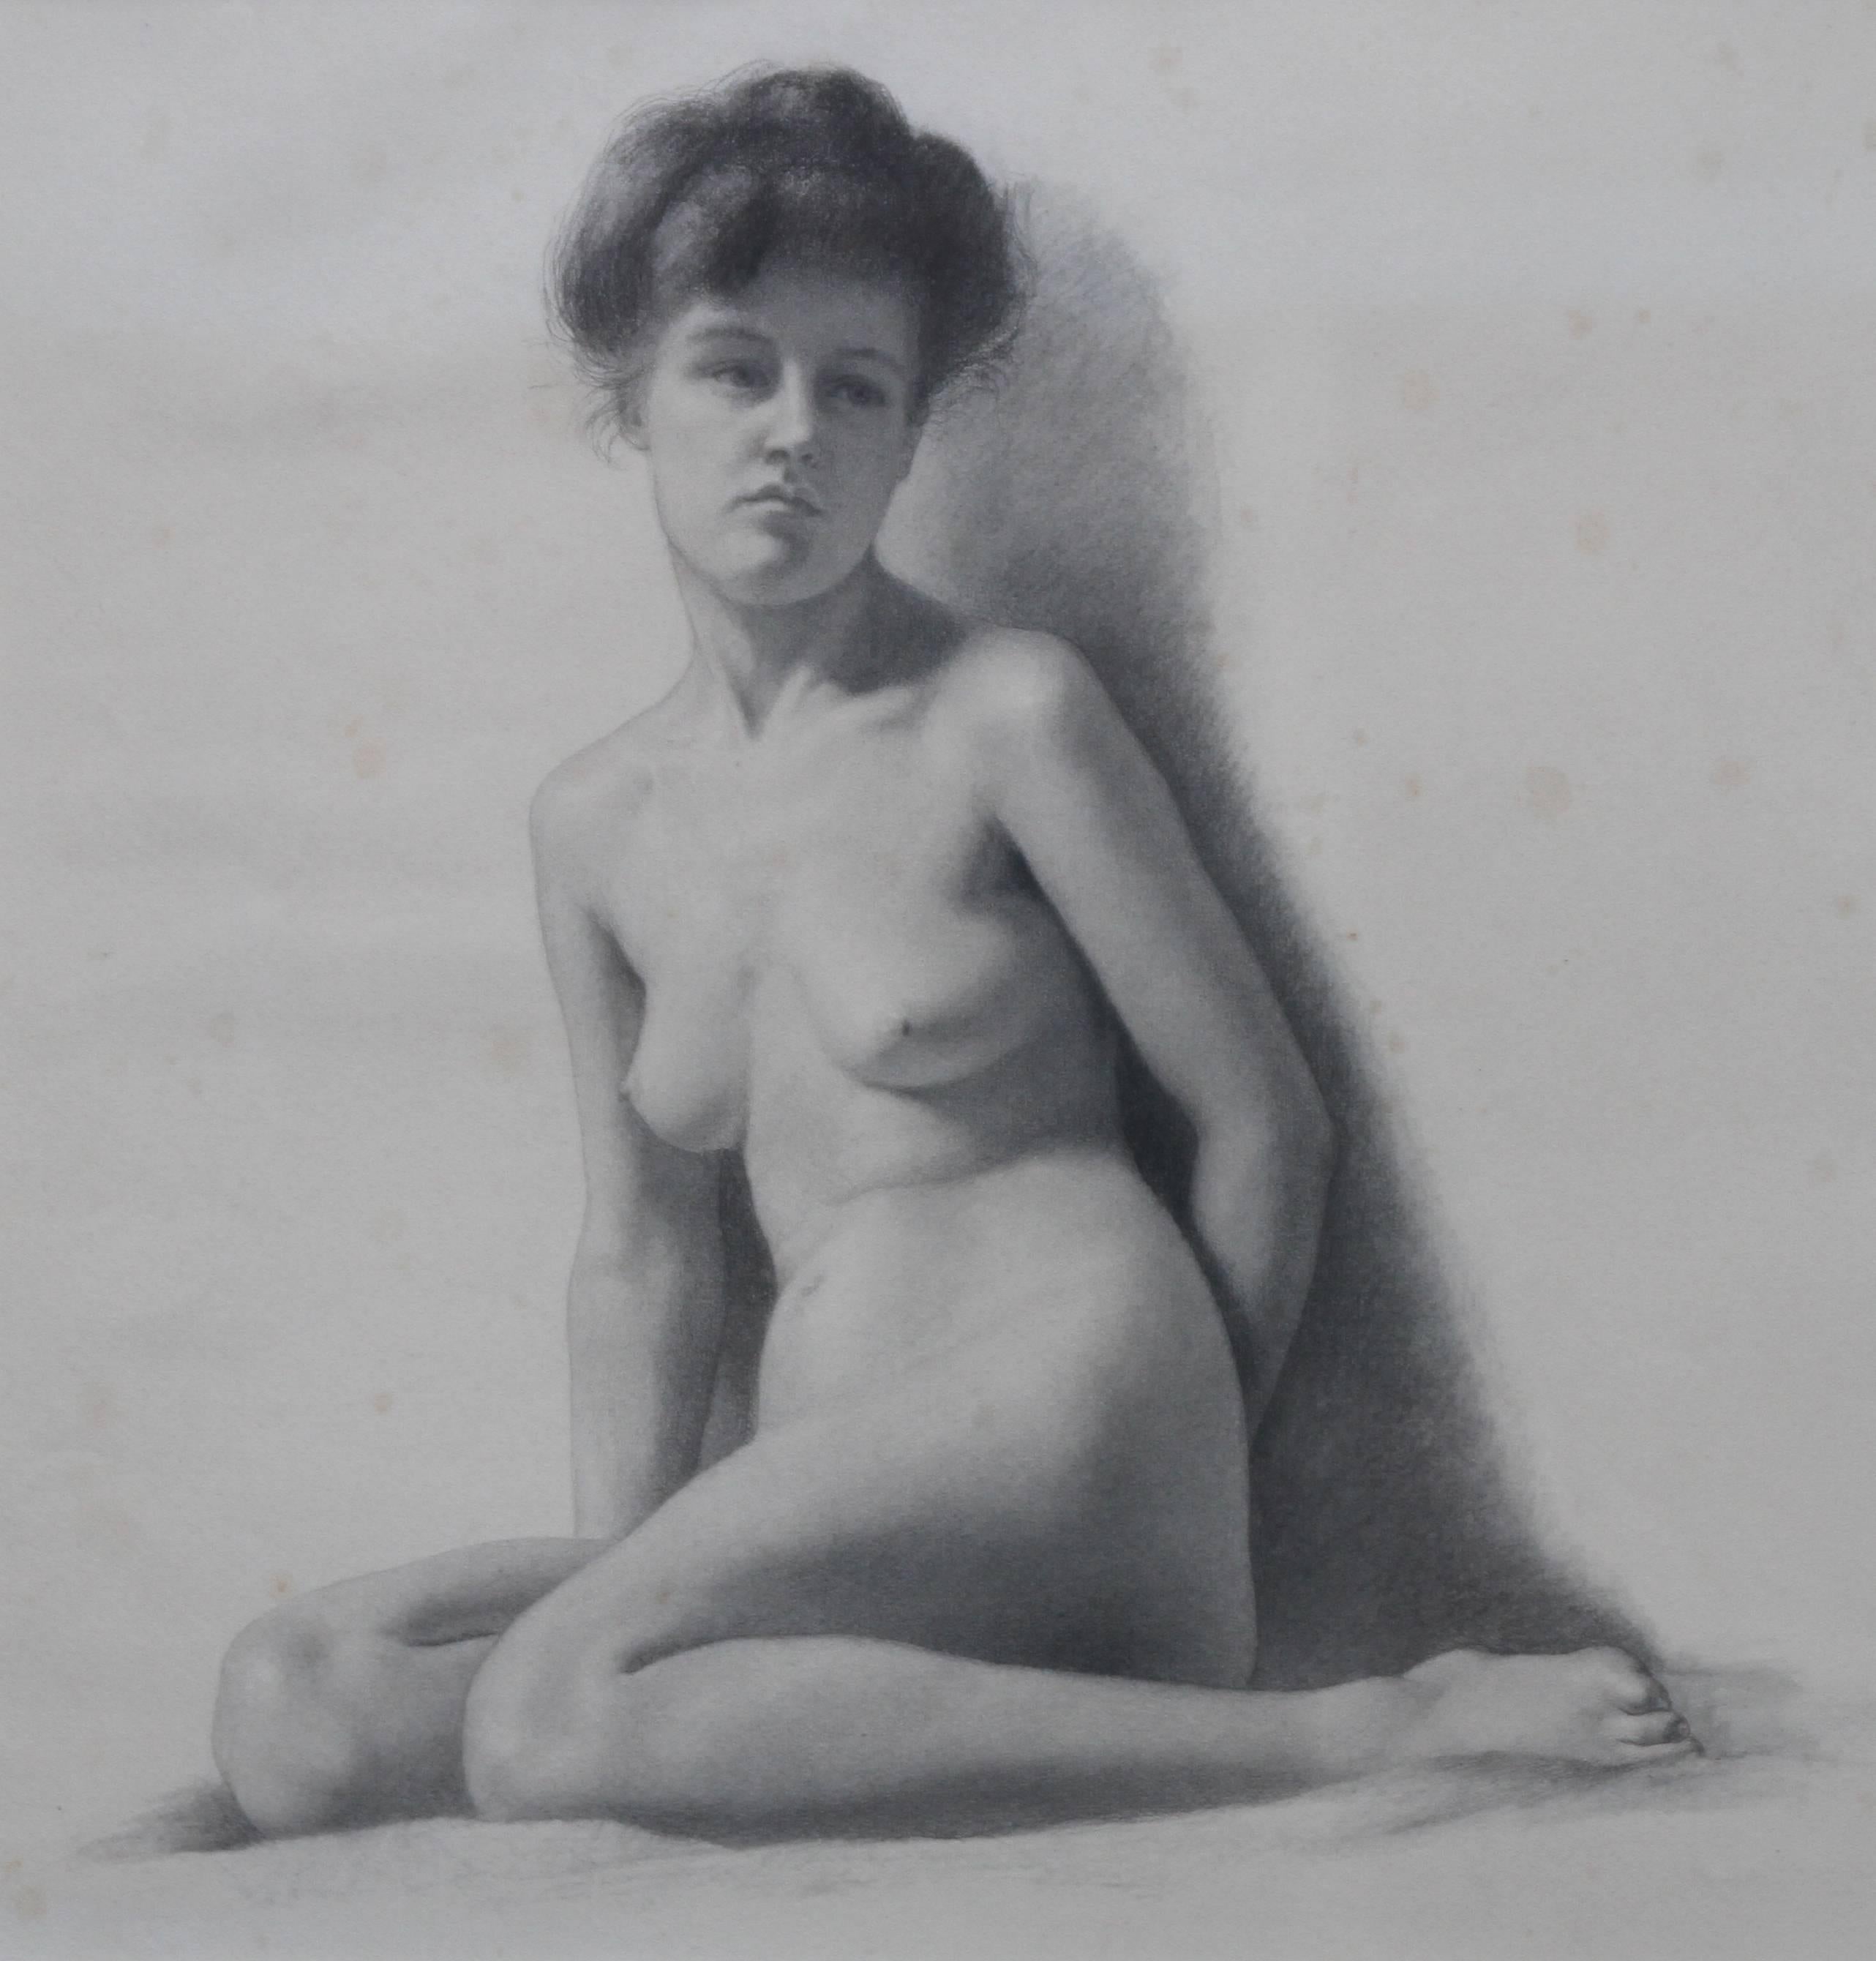 Il s'agit d'un dessin édouardien très détaillé et superbement exécuté d'Estella Canziani, datant d'environ 1911. Dessiné par l'un des principaux artistes de l'époque, il s'agit d'un portrait de femme nue très frappant et fascinant  par l'une des